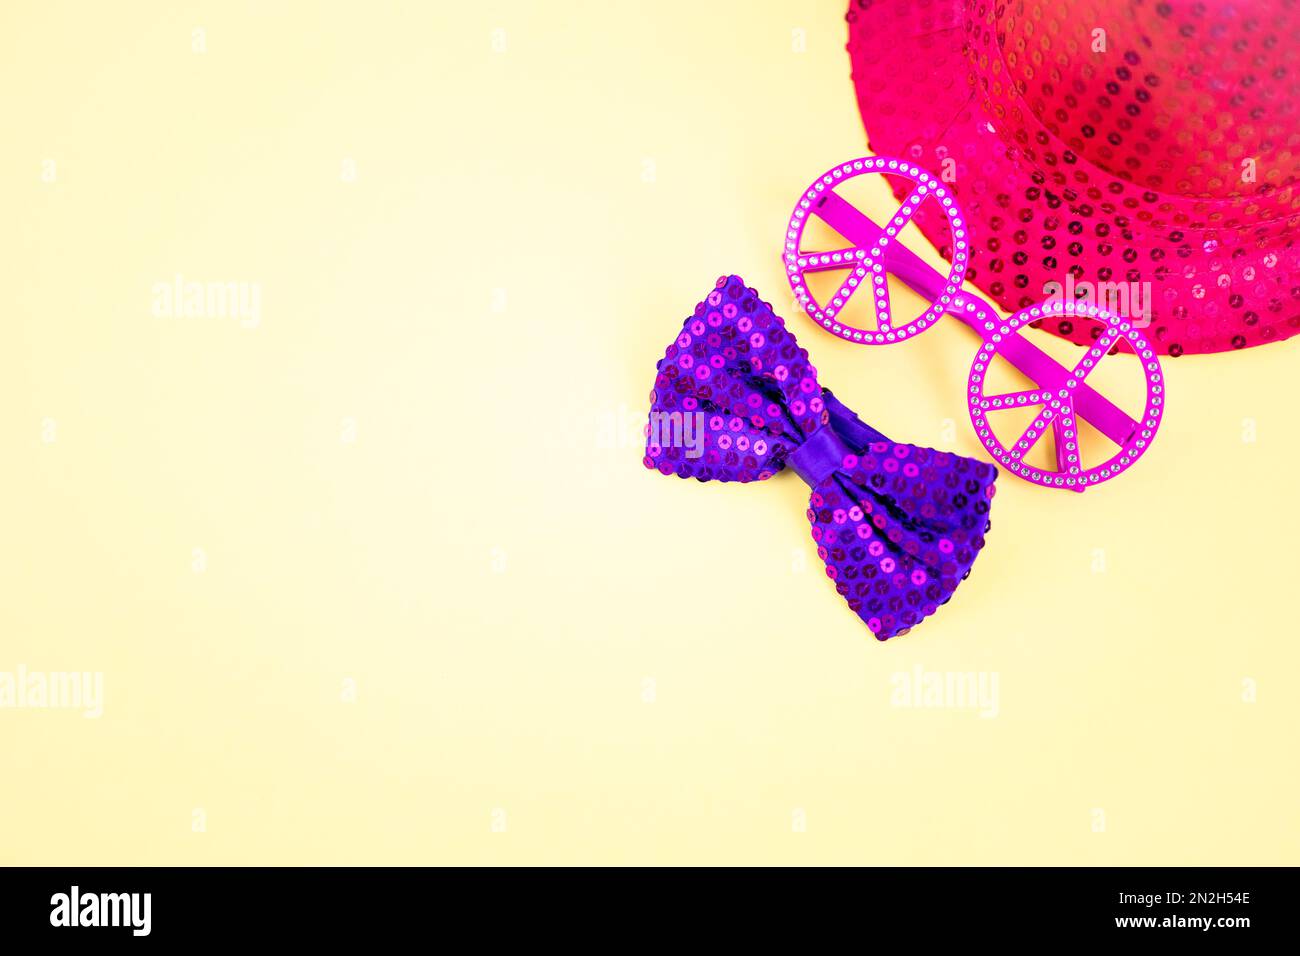 Fond jaune de carnaval avec lunettes de paix roses isolées et chapeau à paillettes et noeud papillon violet. Costume d'accessoires coloré pour le festival et la fête. Banque D'Images